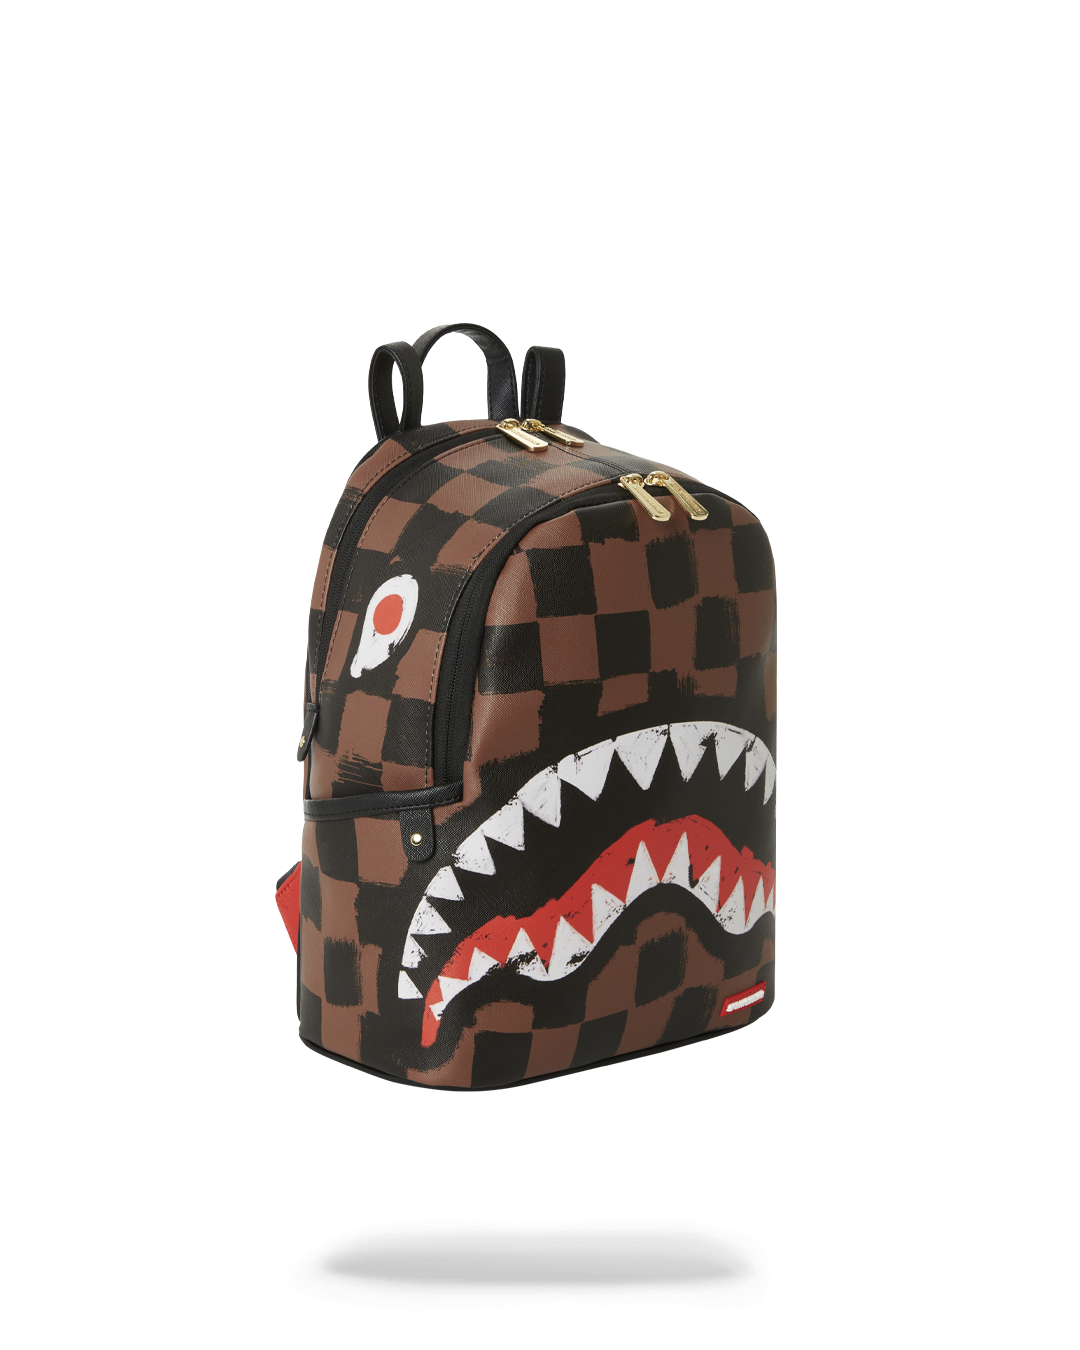 Backpacks Sprayground - Brown Sleek Sharks In Paris backpack